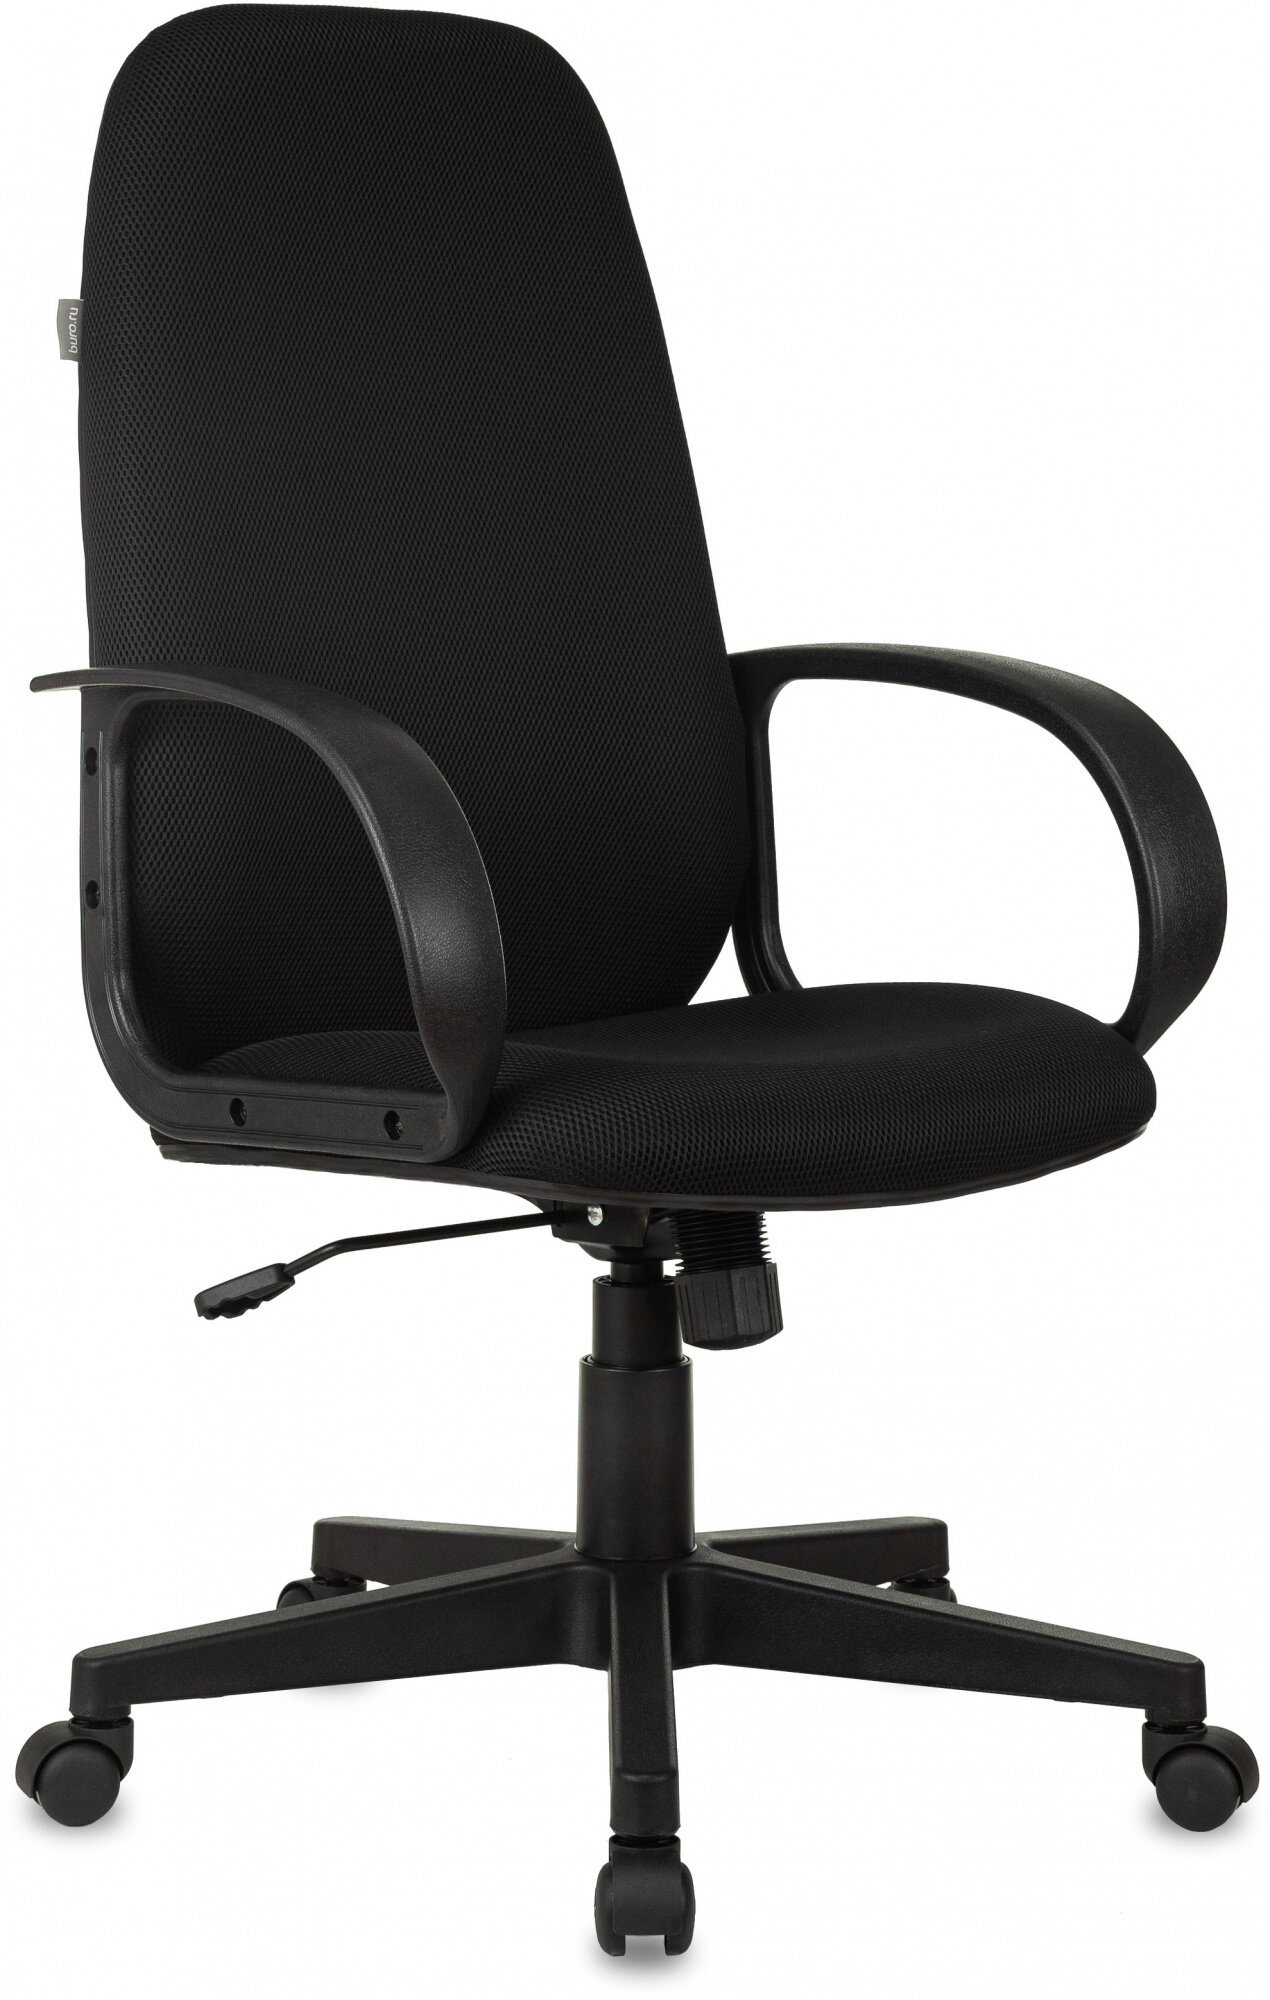 Кресло руководителя Ch-808AXSN черный TW-11 крестовина пластик CH-808AXSN/TW-11